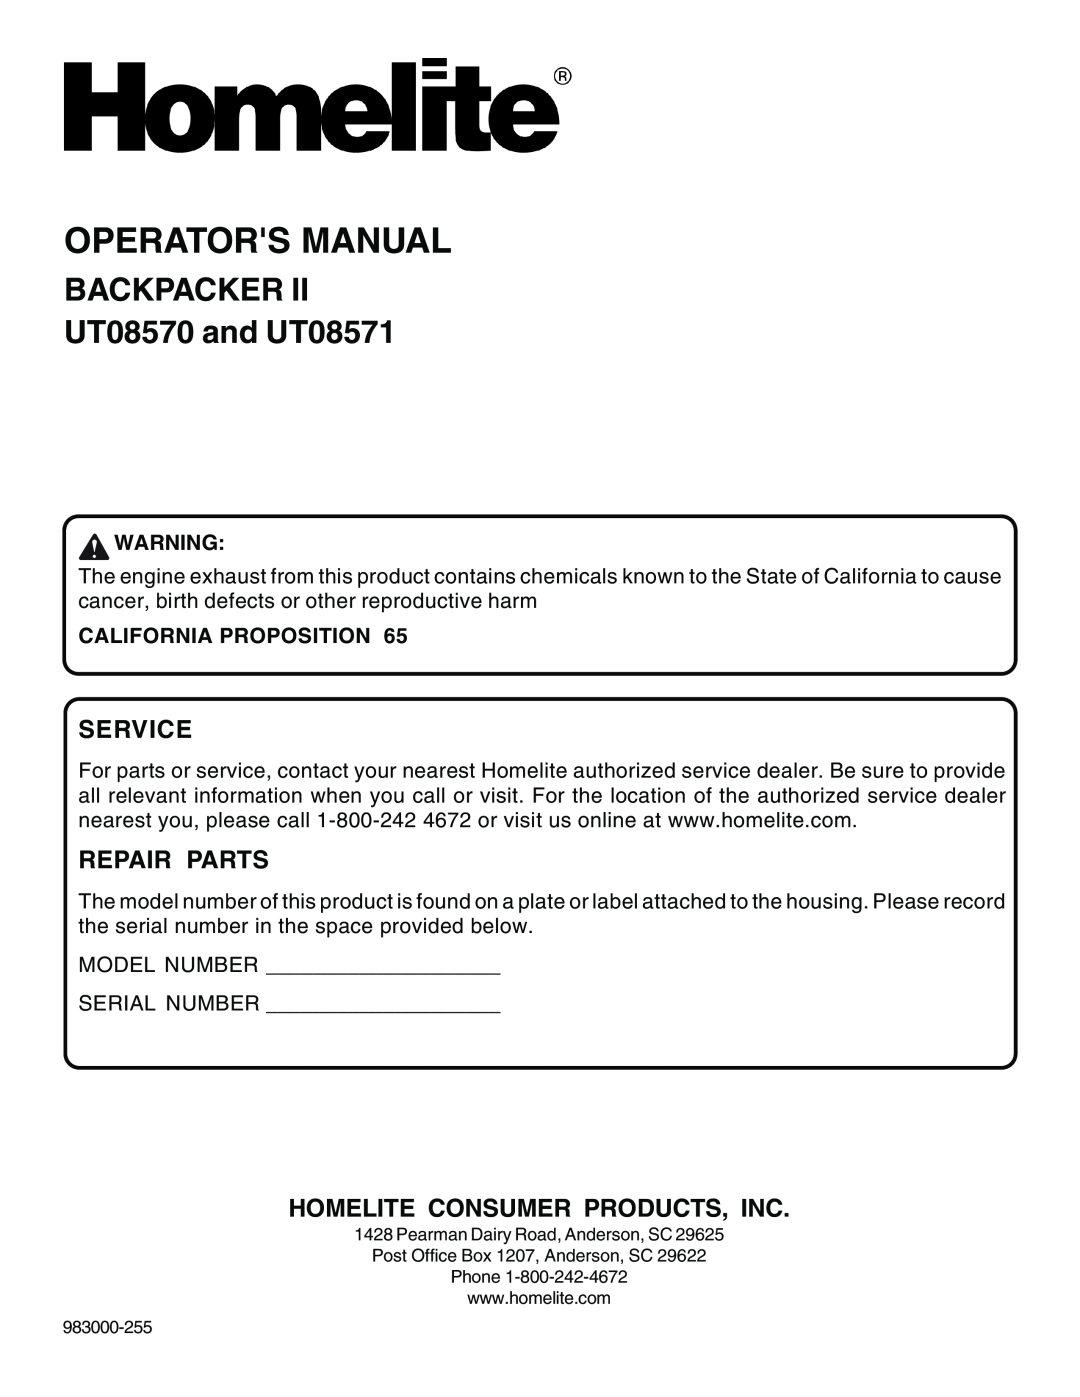 Homelite manual Operators Manual, BACKPACKER UT08570 and UT08571, Service, Repair Parts, Homelite Consumer Products, Inc 